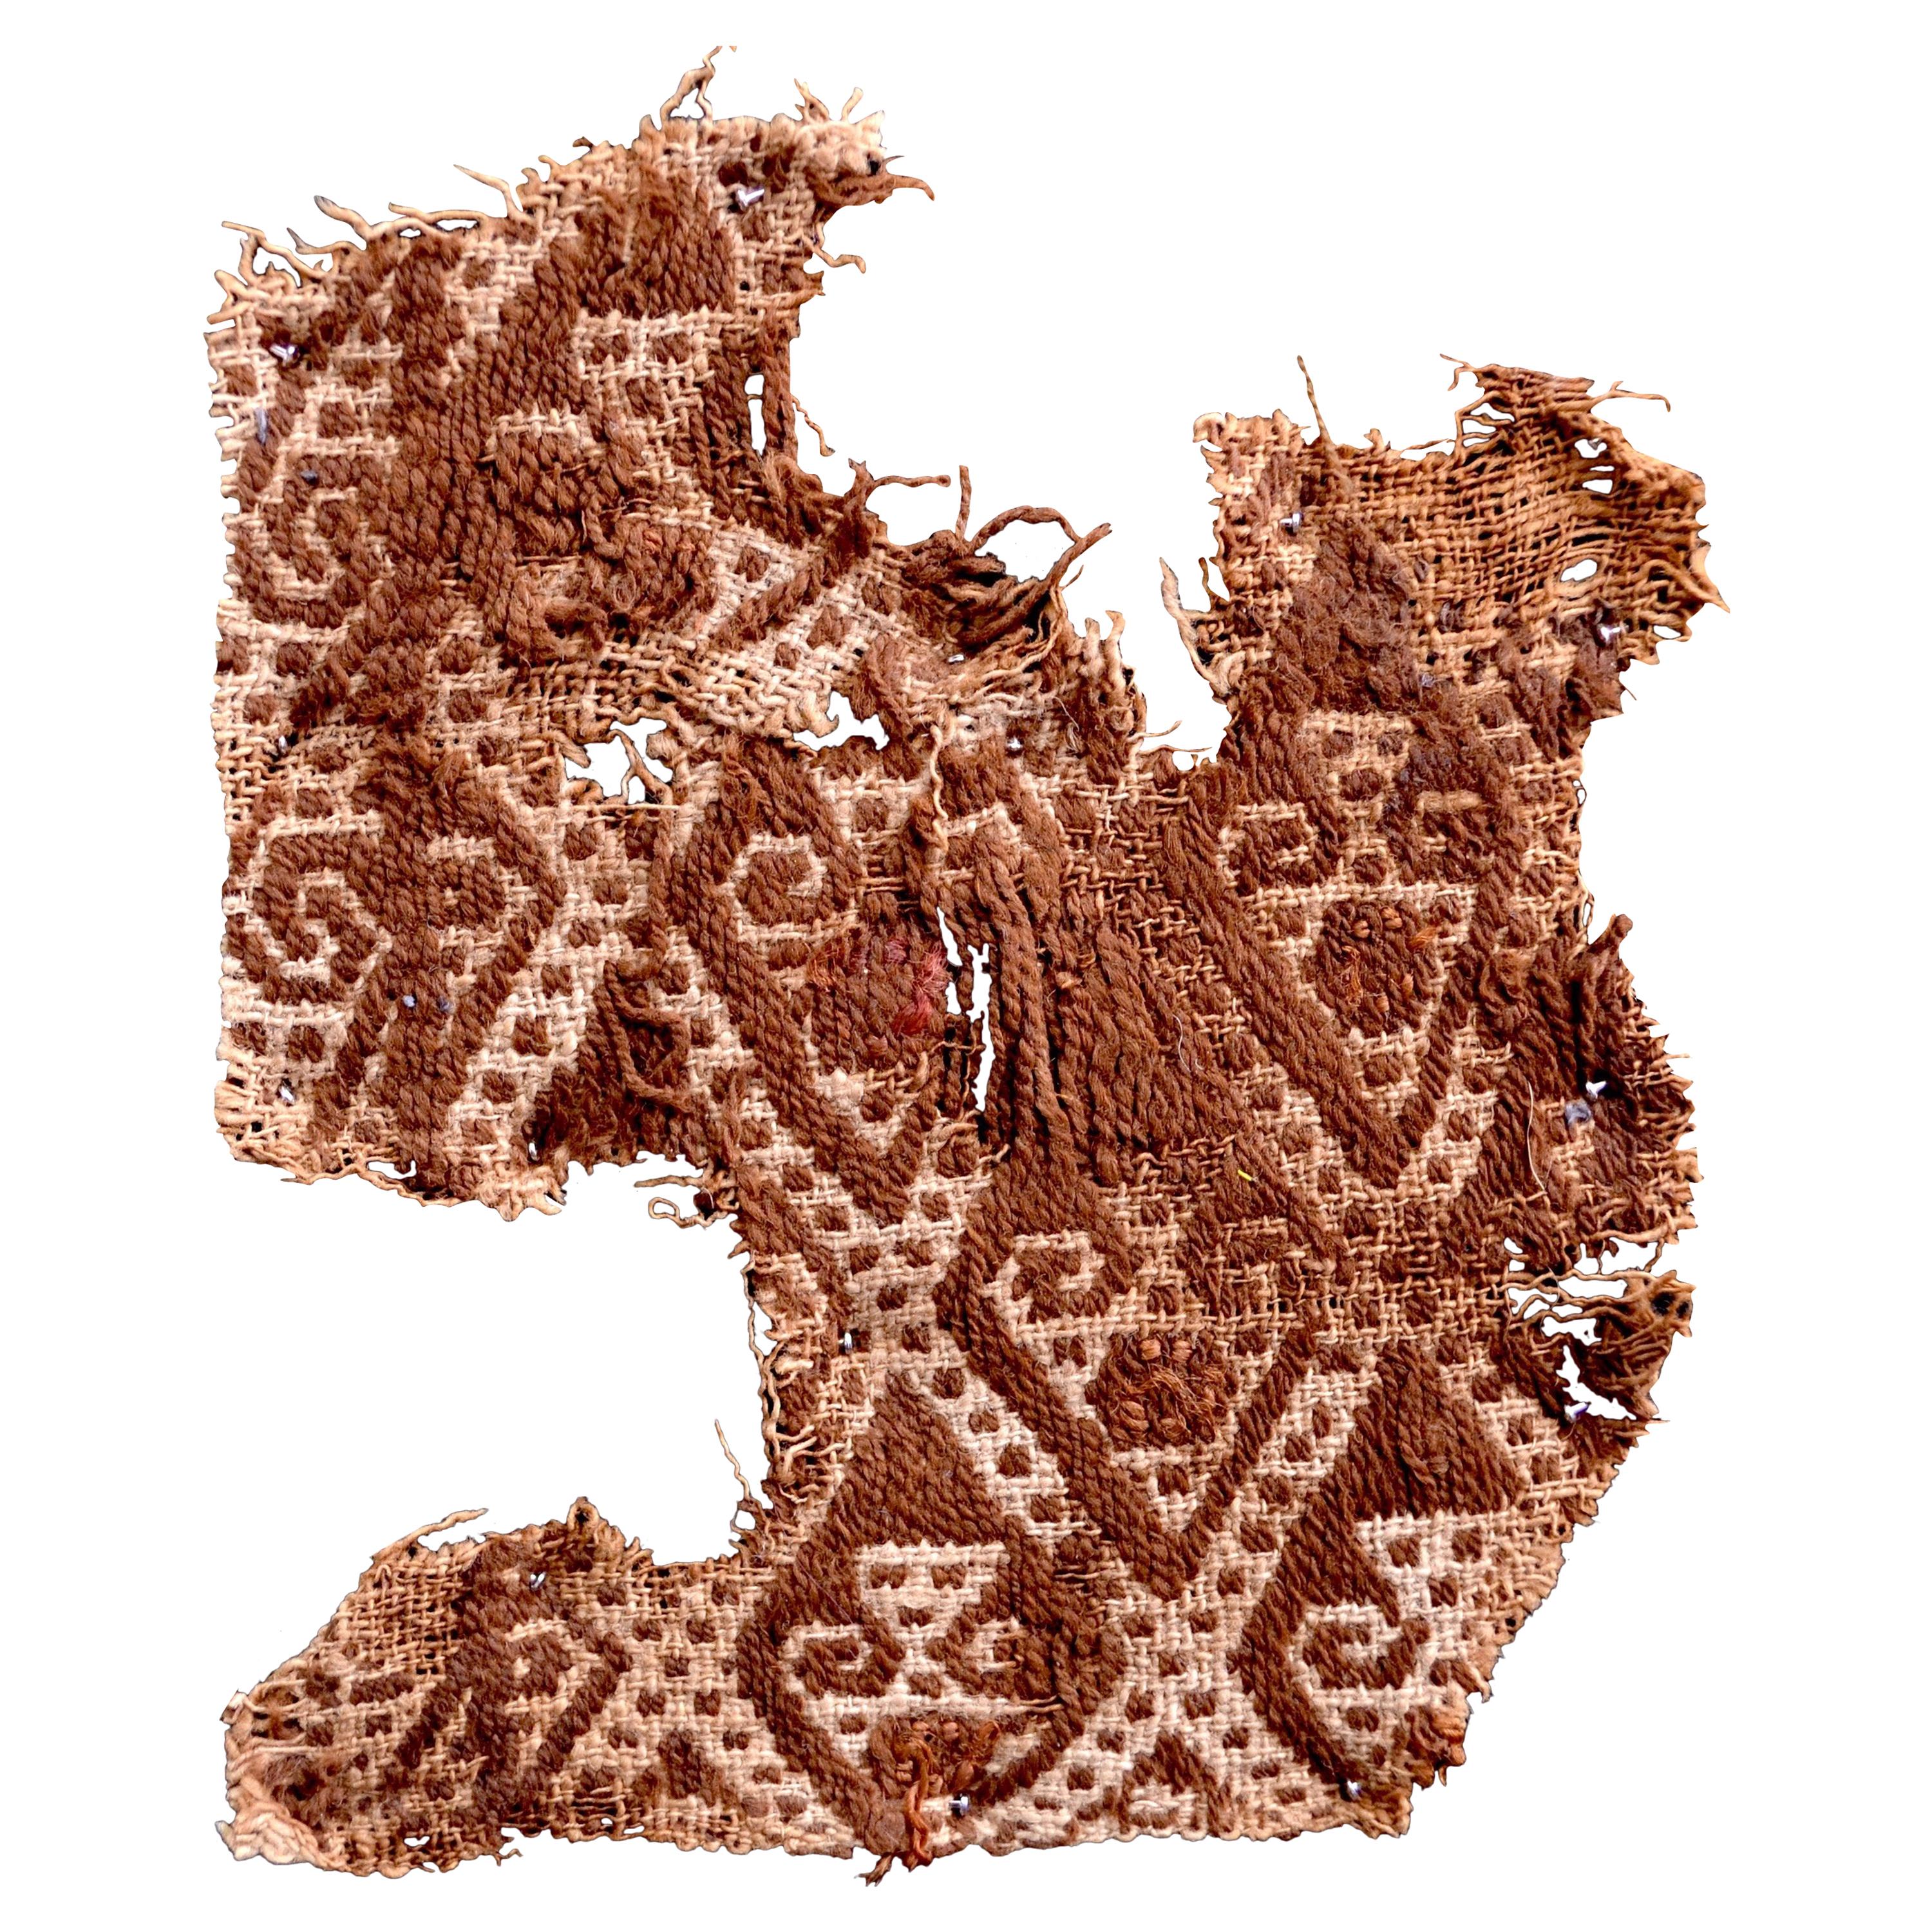 Abstraktes präkolumbianisches Paracas-Textil, Peru, 1100-1400 n. Chr., nach Ferdinand Anton